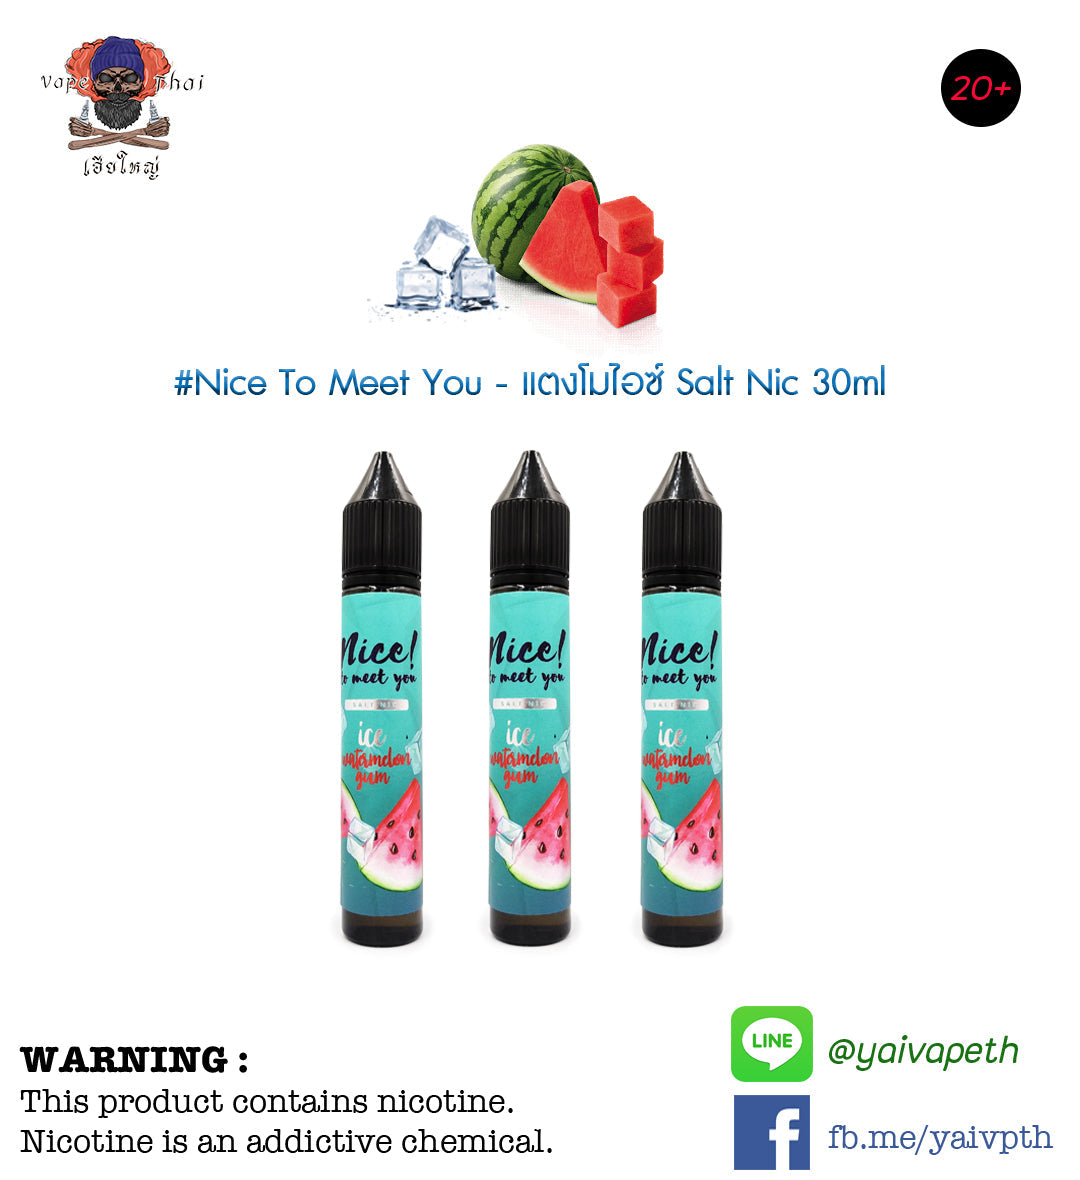 ไนท์แตงโมไอซ์ - น้ำยาบุหรี่ไฟฟ้า Nice To Meet You Ice Watermelon Gum Salt nic 30ml (มาเลเซีย) [เย็น] ของแท้ - YAIVAPETHAI  No.1